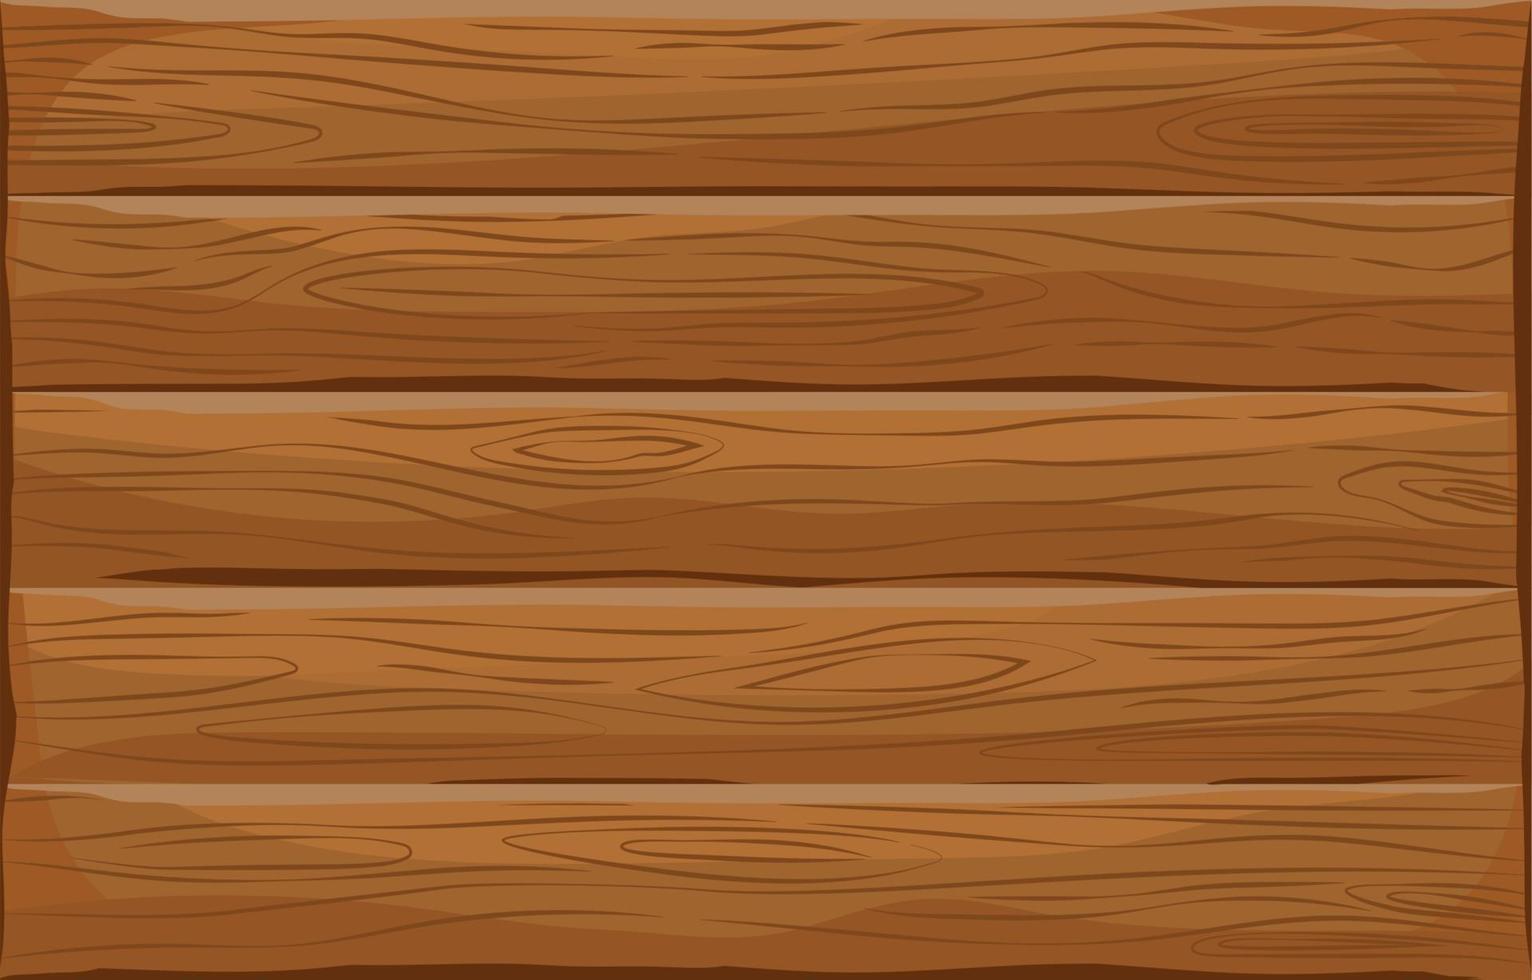 Holz leer brauner Hintergrund vektor